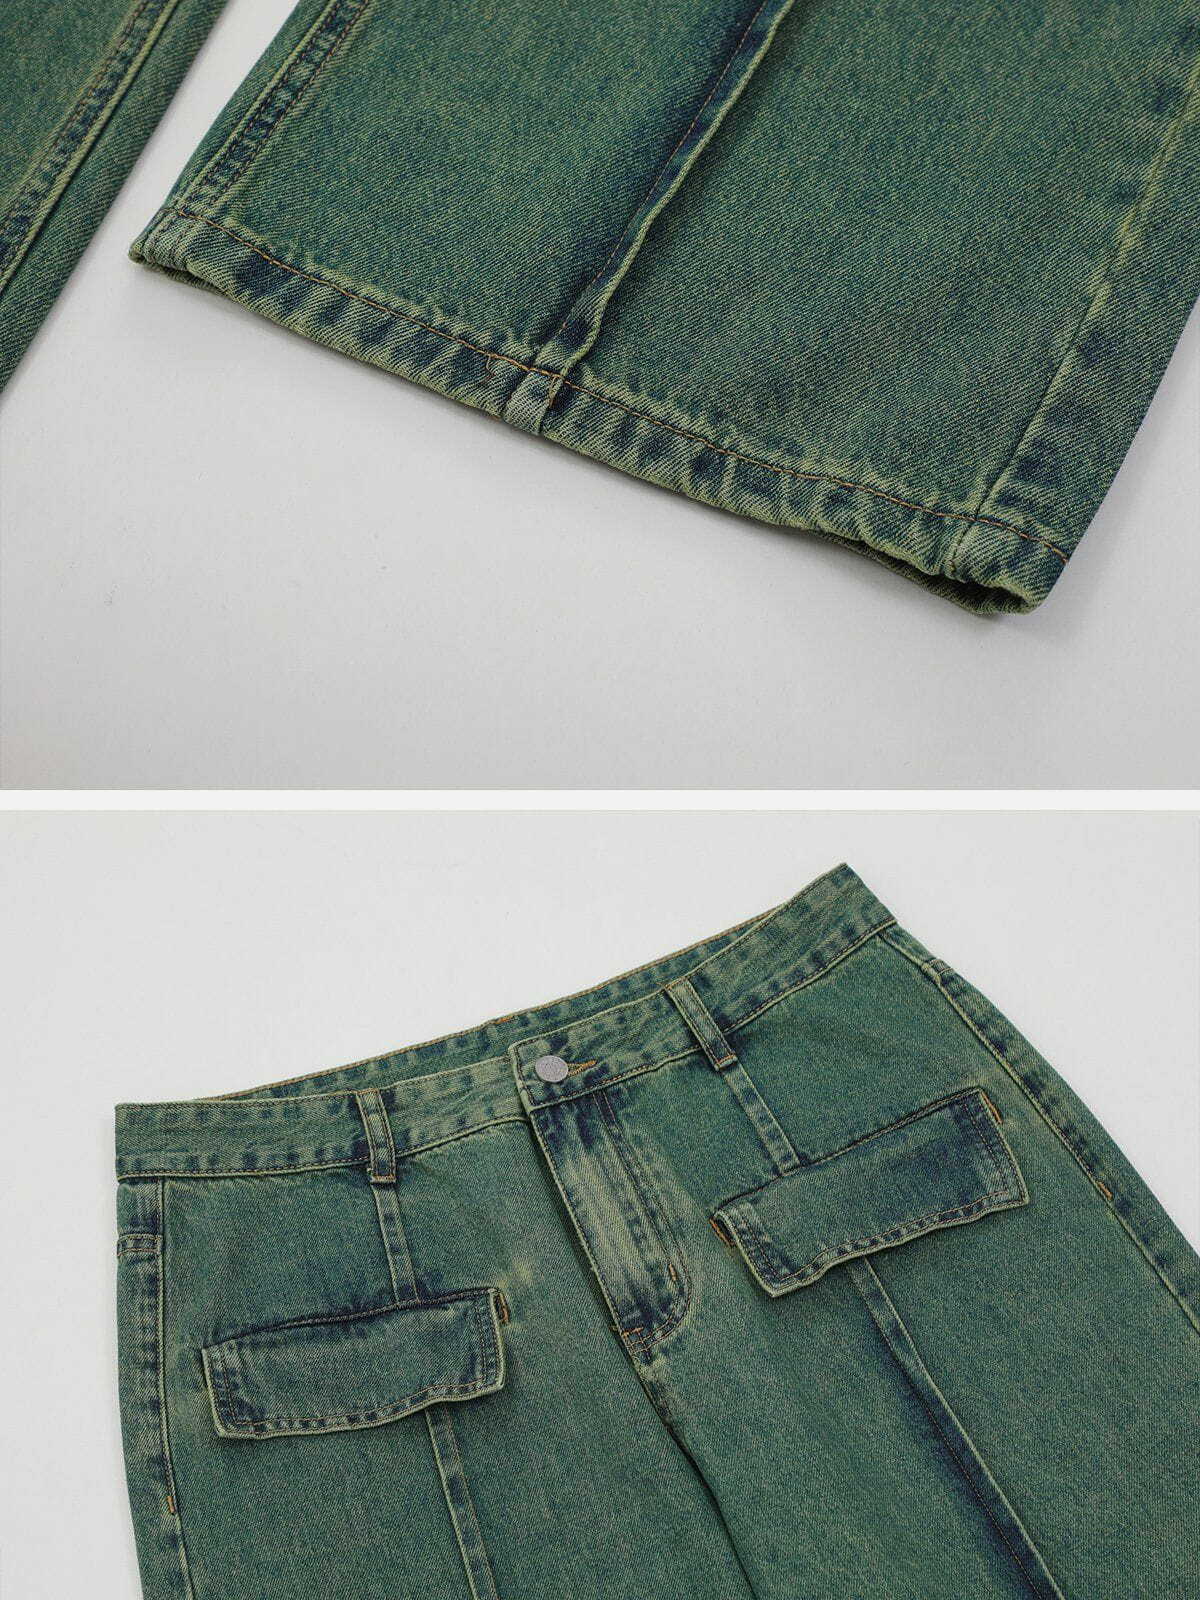 vintage washed lines design jeans urban vintage washed denim retro & edgy fashion 3132